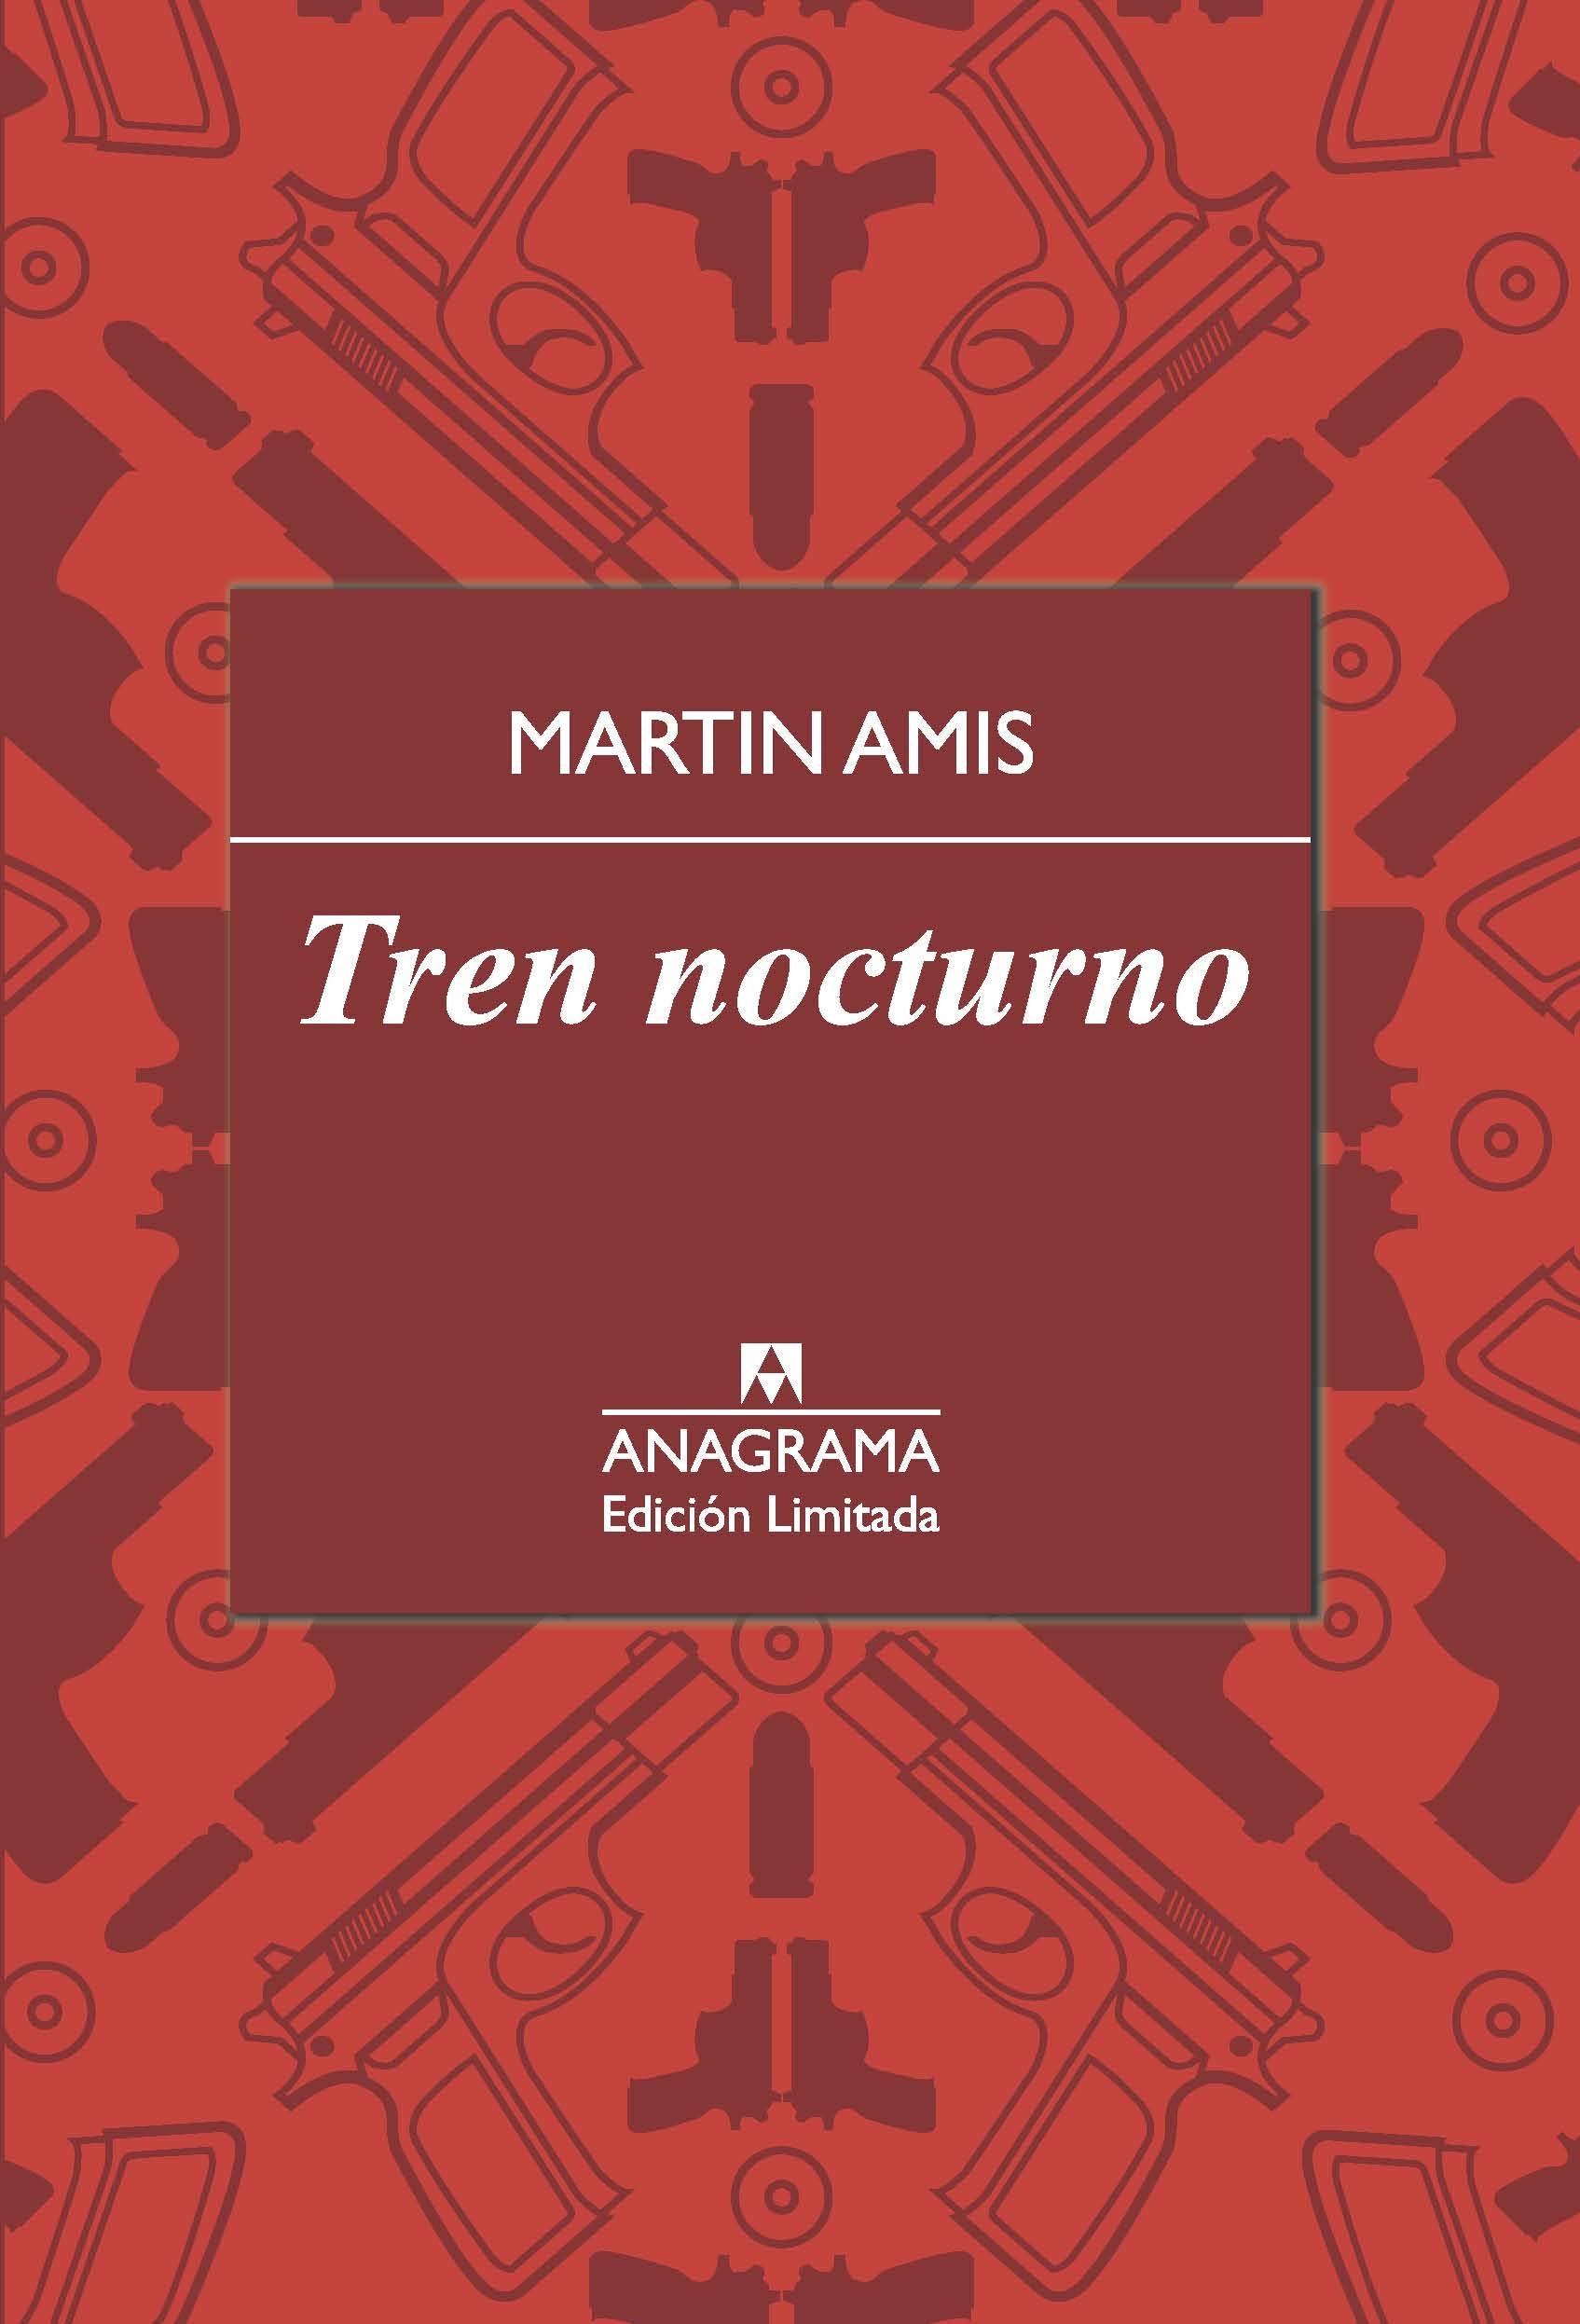 Tren nocturno "(Edición limitada)". 